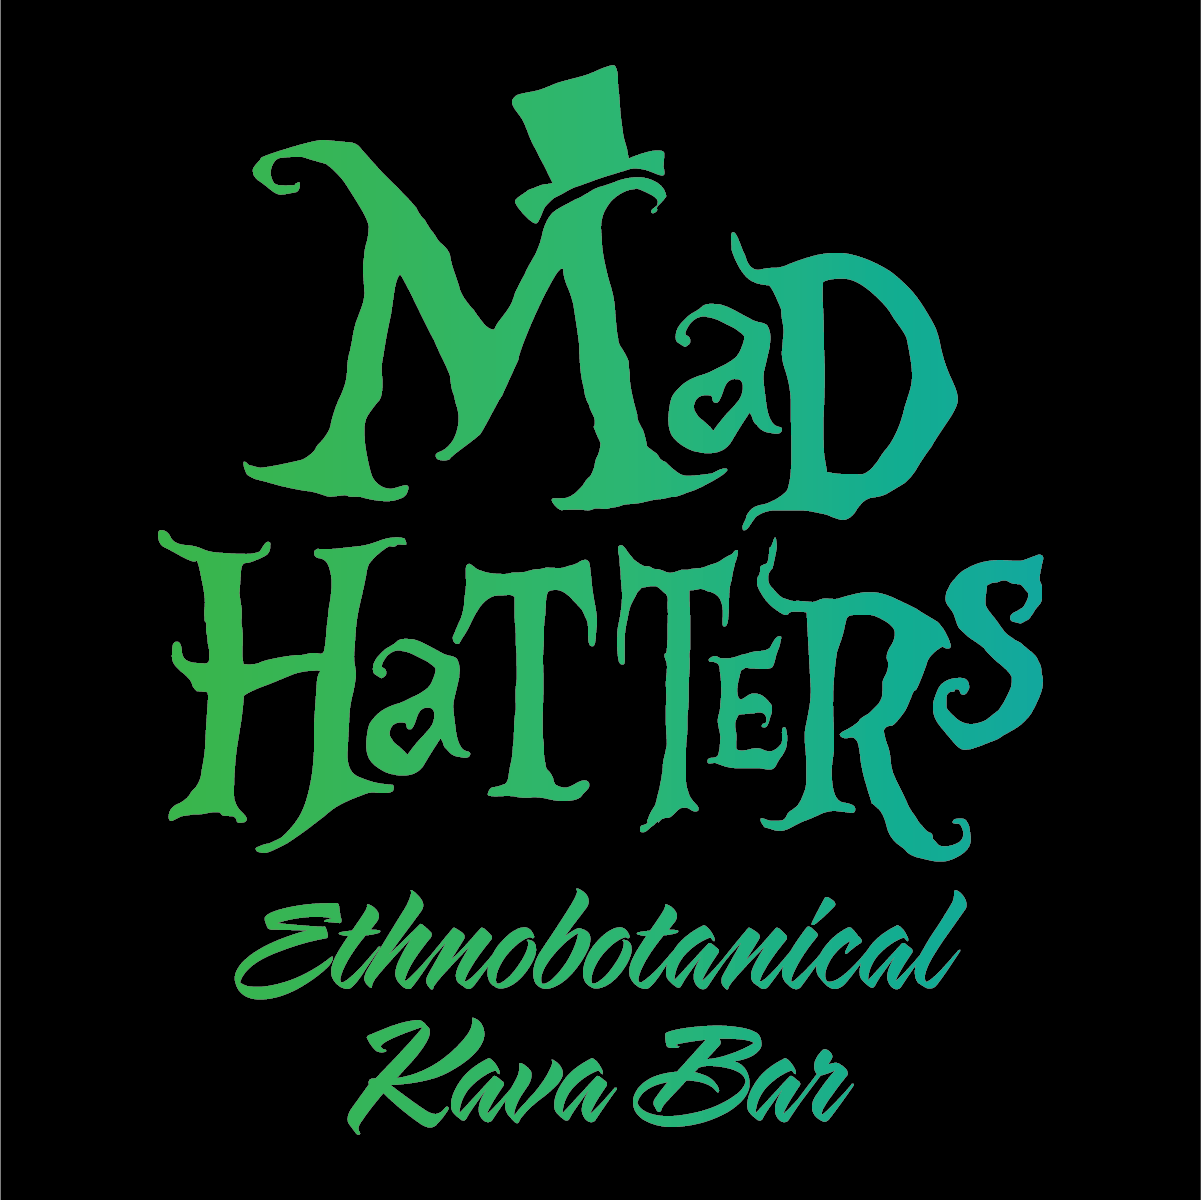 Mad Hatters Ethnobotanical Kava Bar